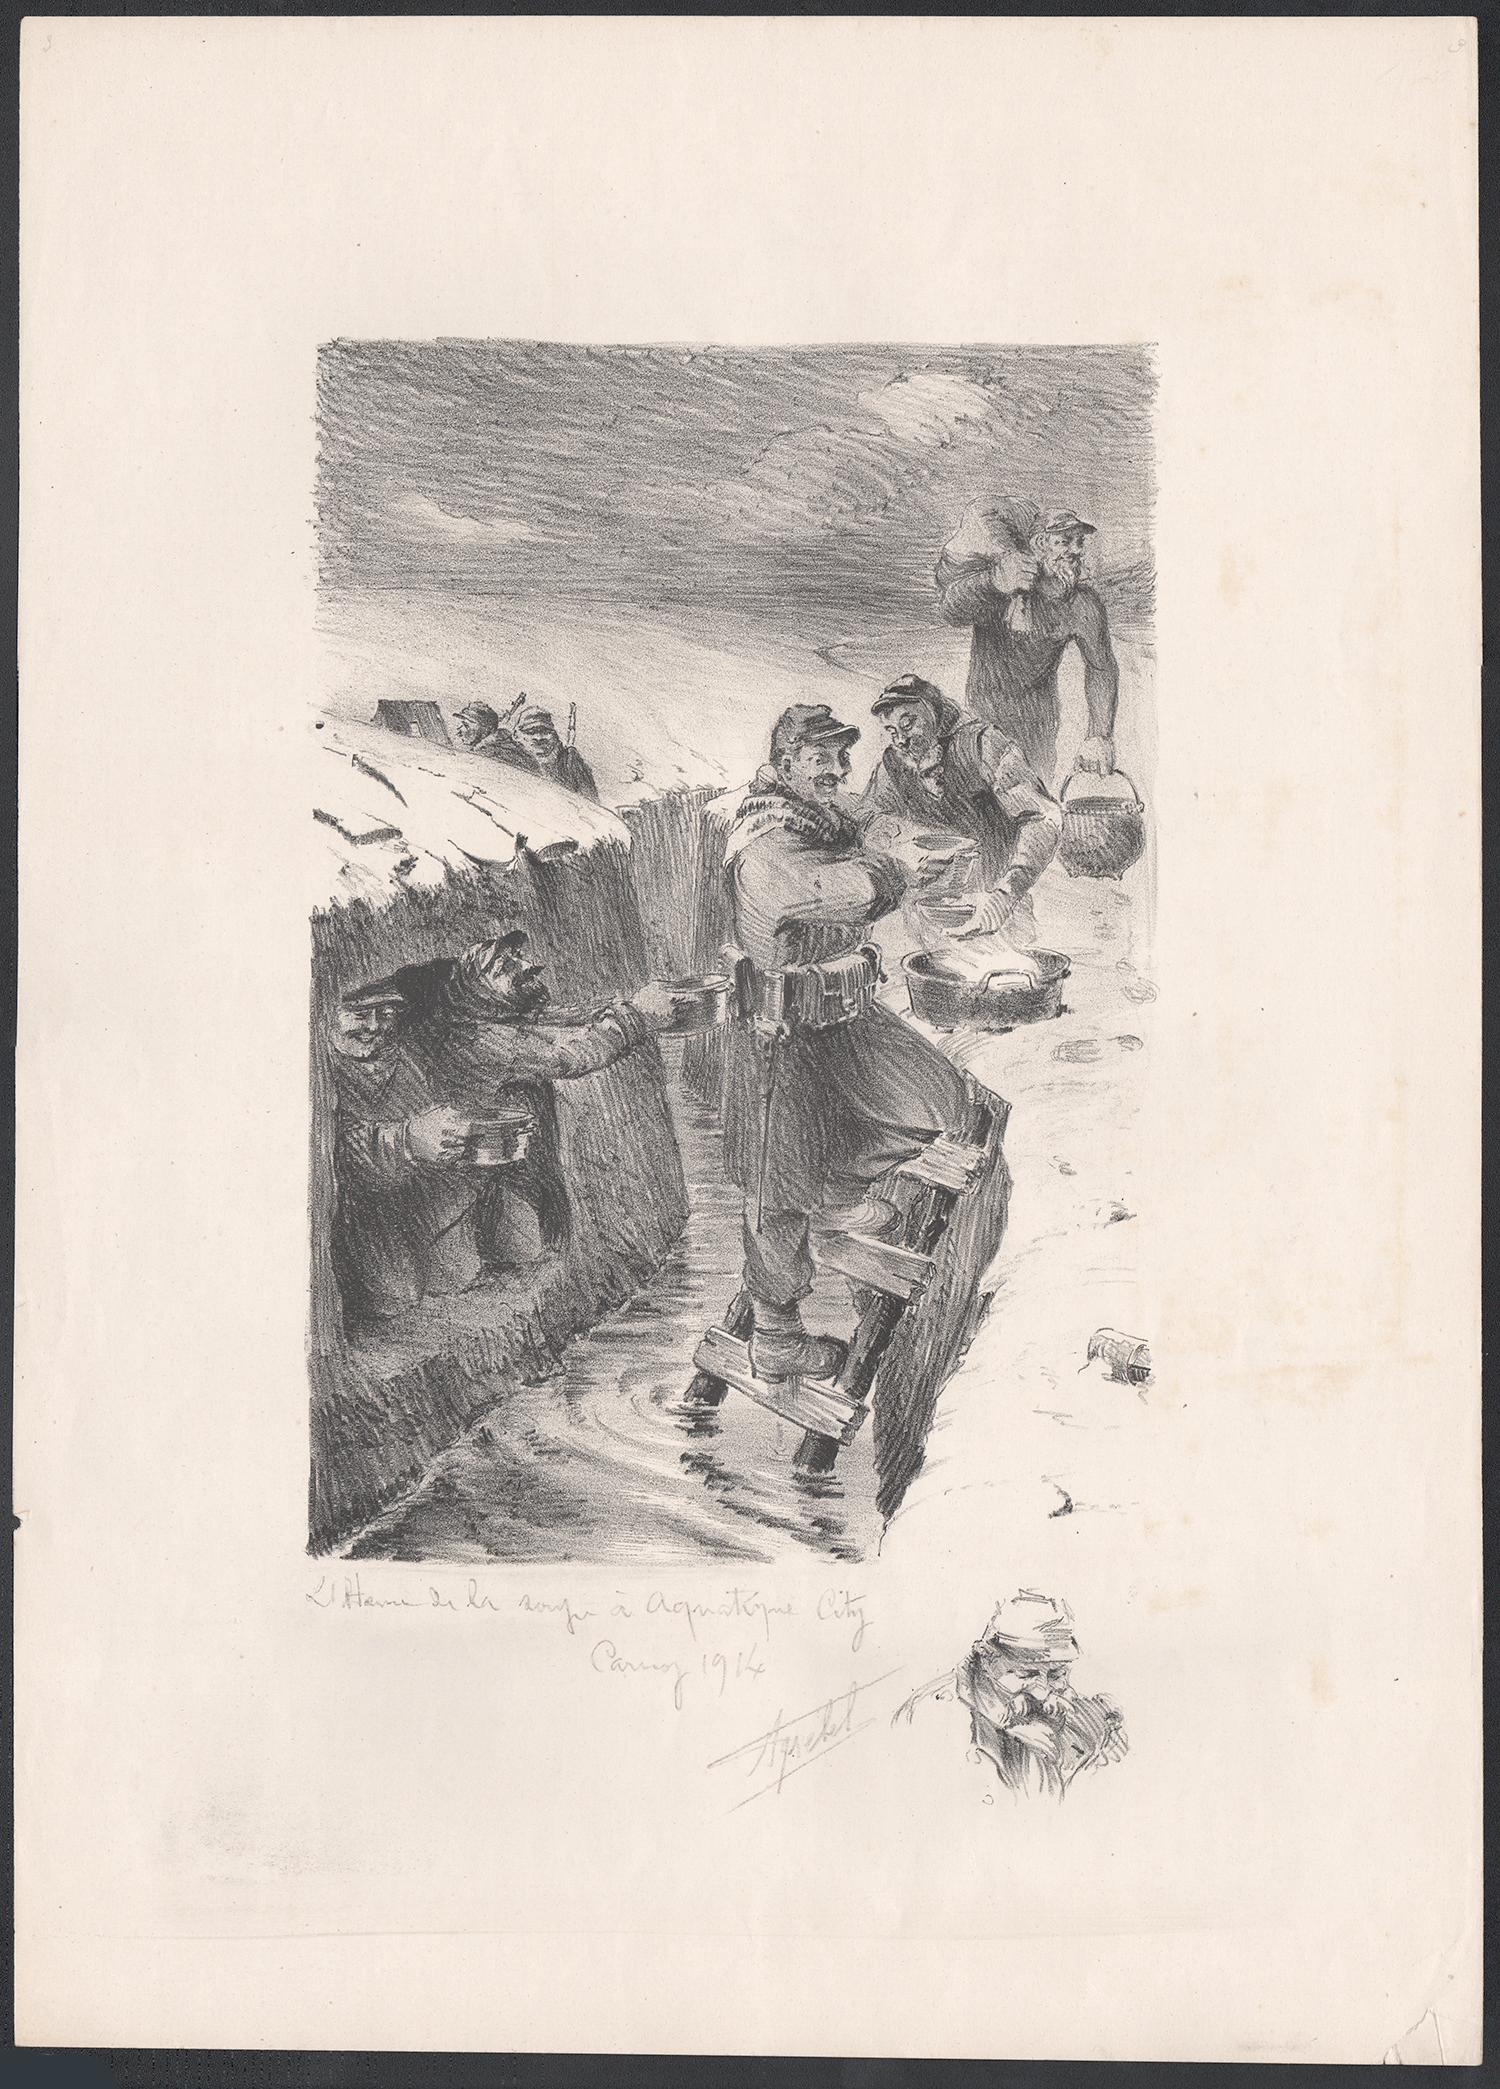 L'heure de la soupe une ville aquatique, lithographie de la Première Guerre mondiale réalisée par Truchet, 1914 - Print de Francis Abel Truchet